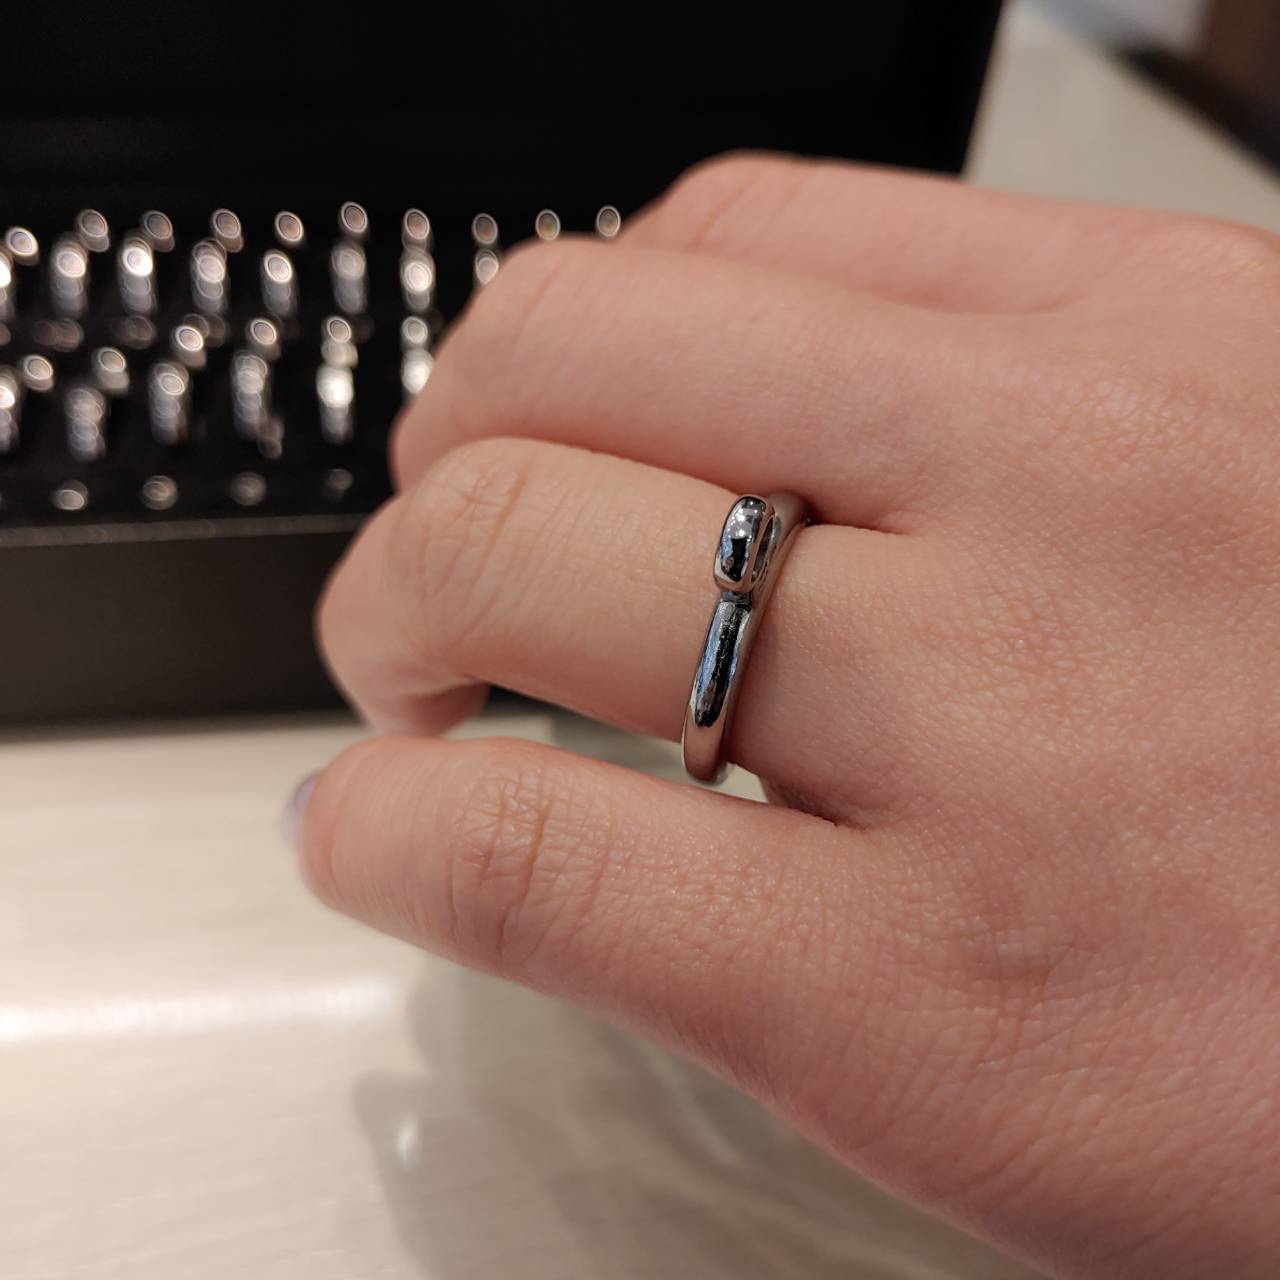 お家で簡単オンラインで結婚指輪や婚約指輪のサイズ測定できる